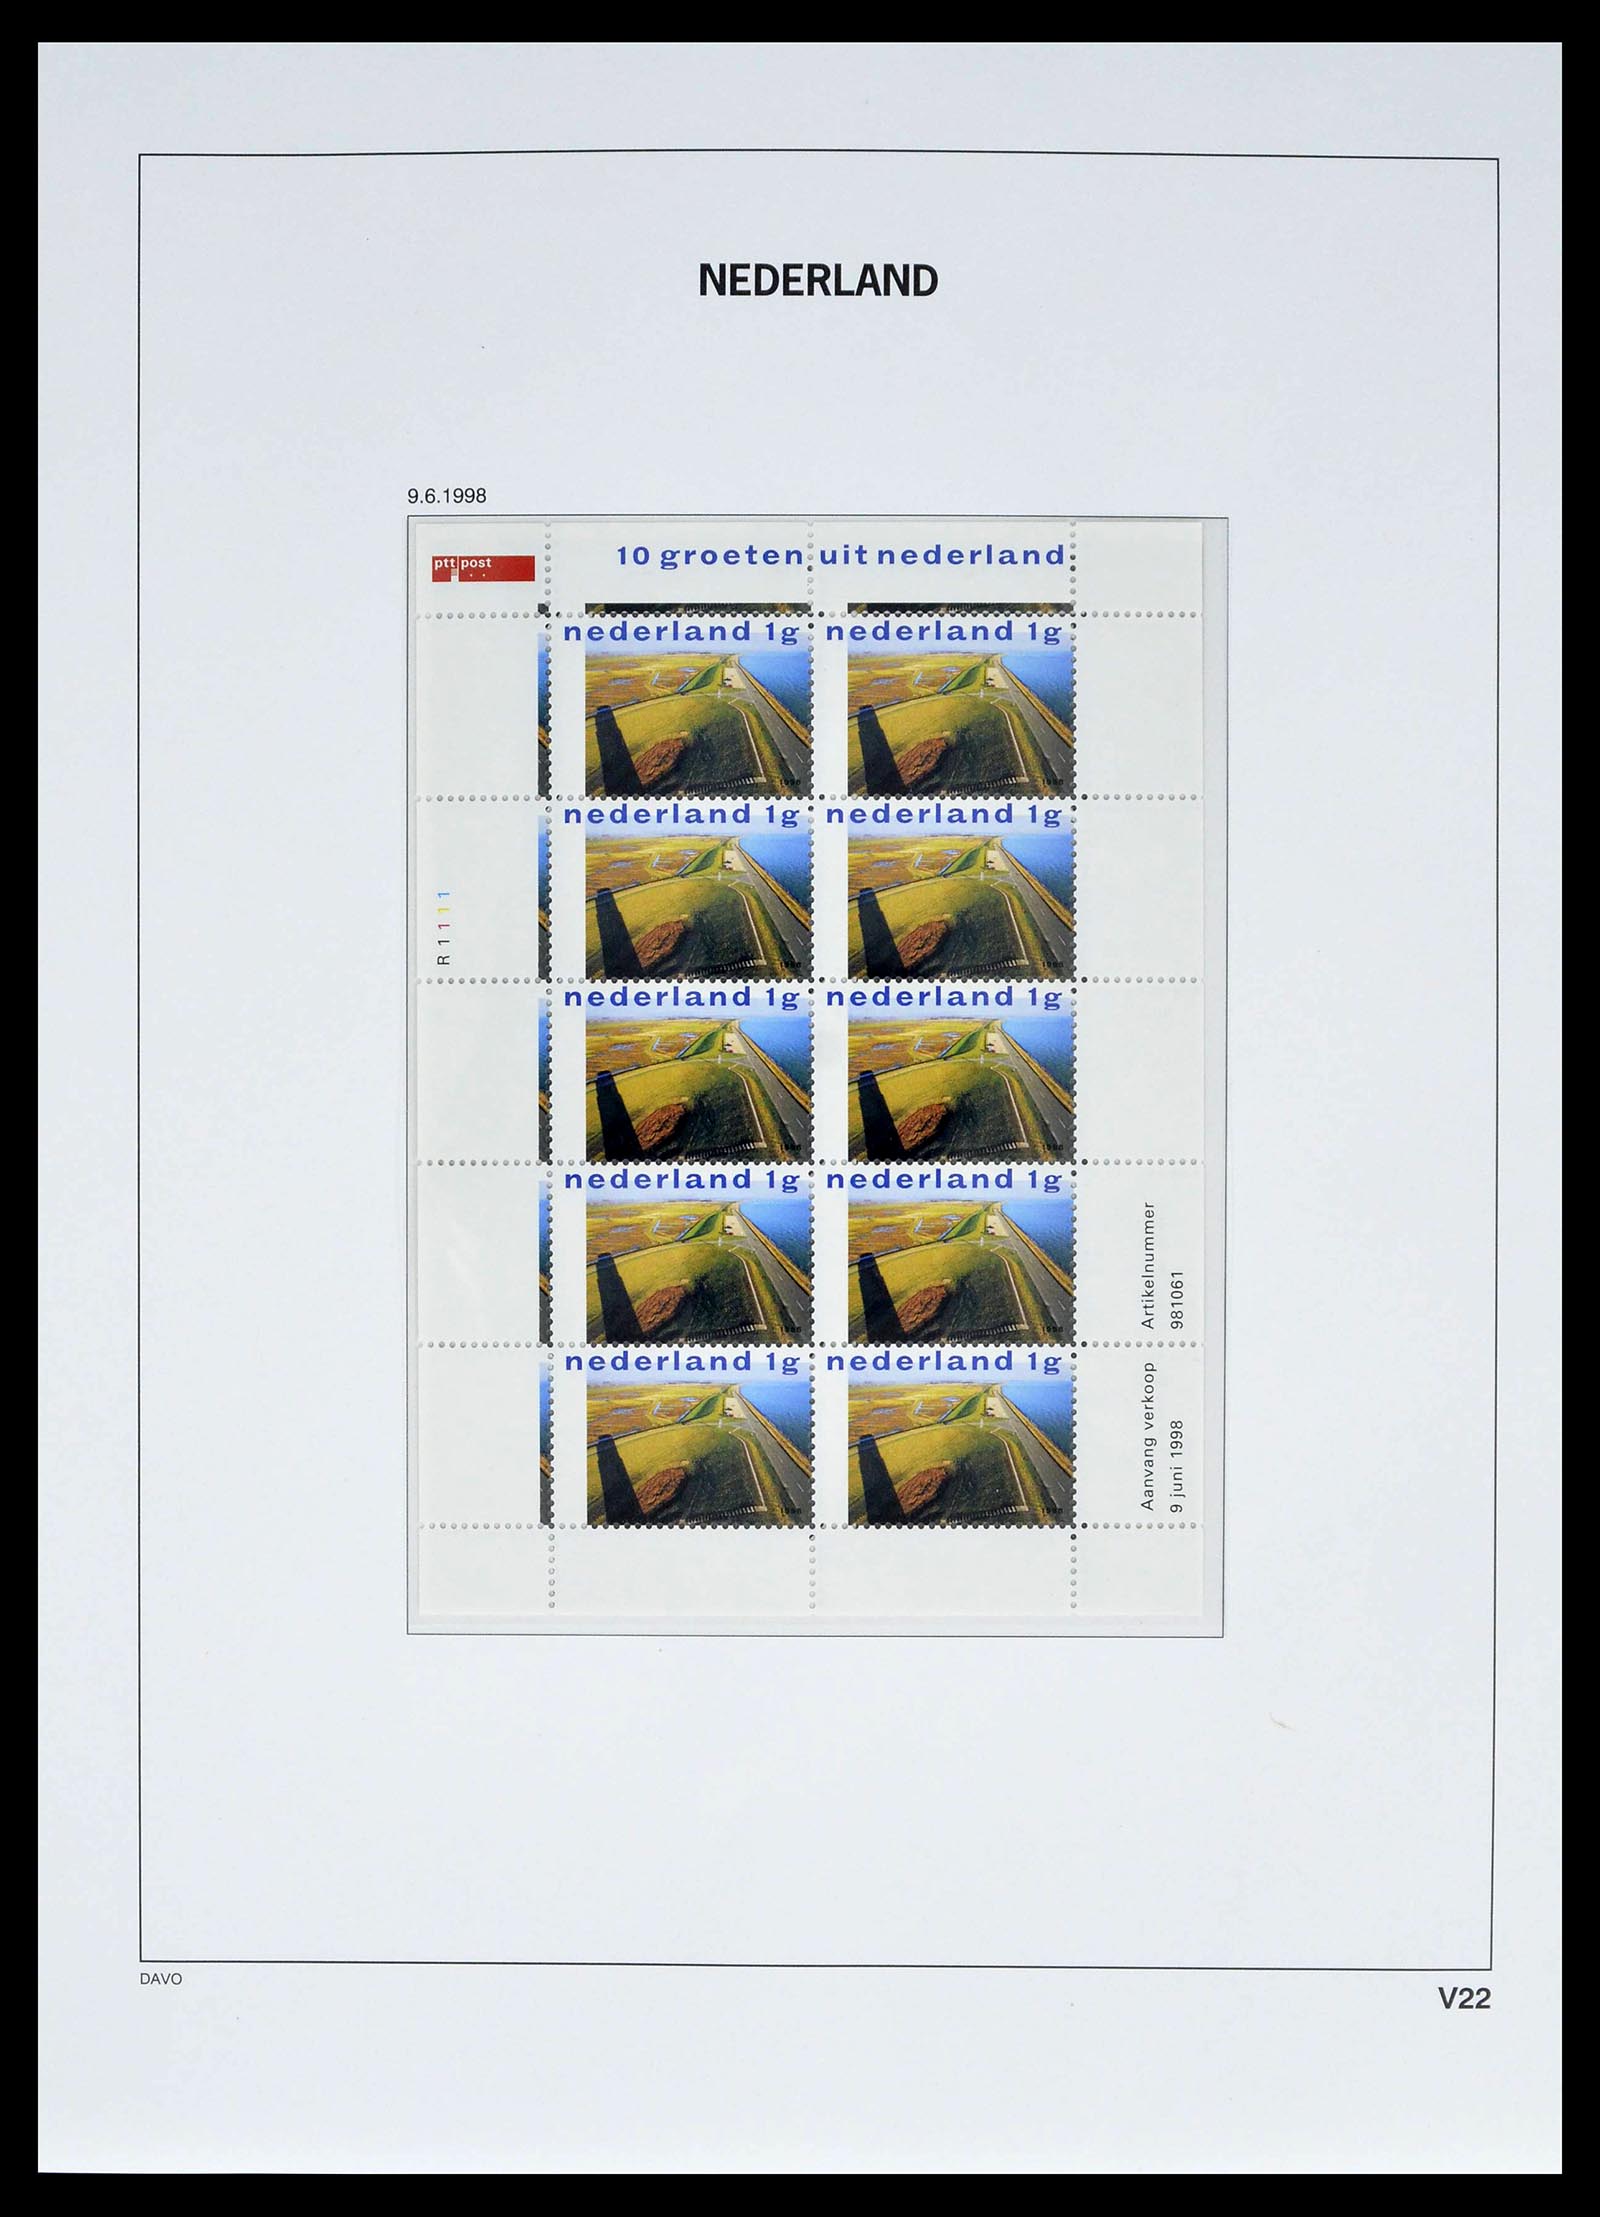 39134 0031 - Stamp collection 39134 Netherlands sheetlets 1992-2019!